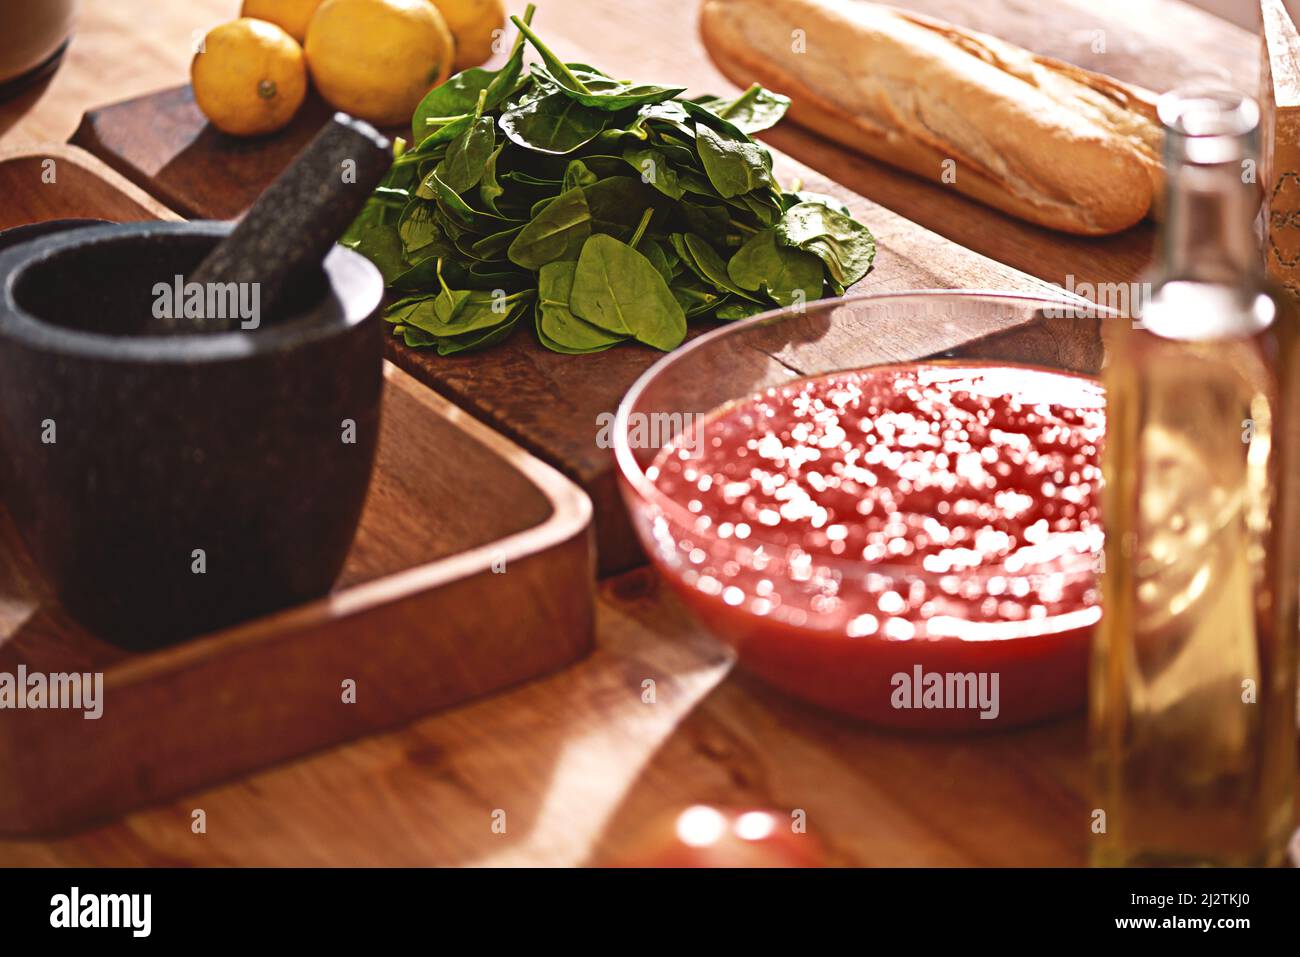 Tolle Zutaten machen gutes Essen. Aufnahme einer Gruppe von Zutaten auf einer Tischplatte. Stockfoto